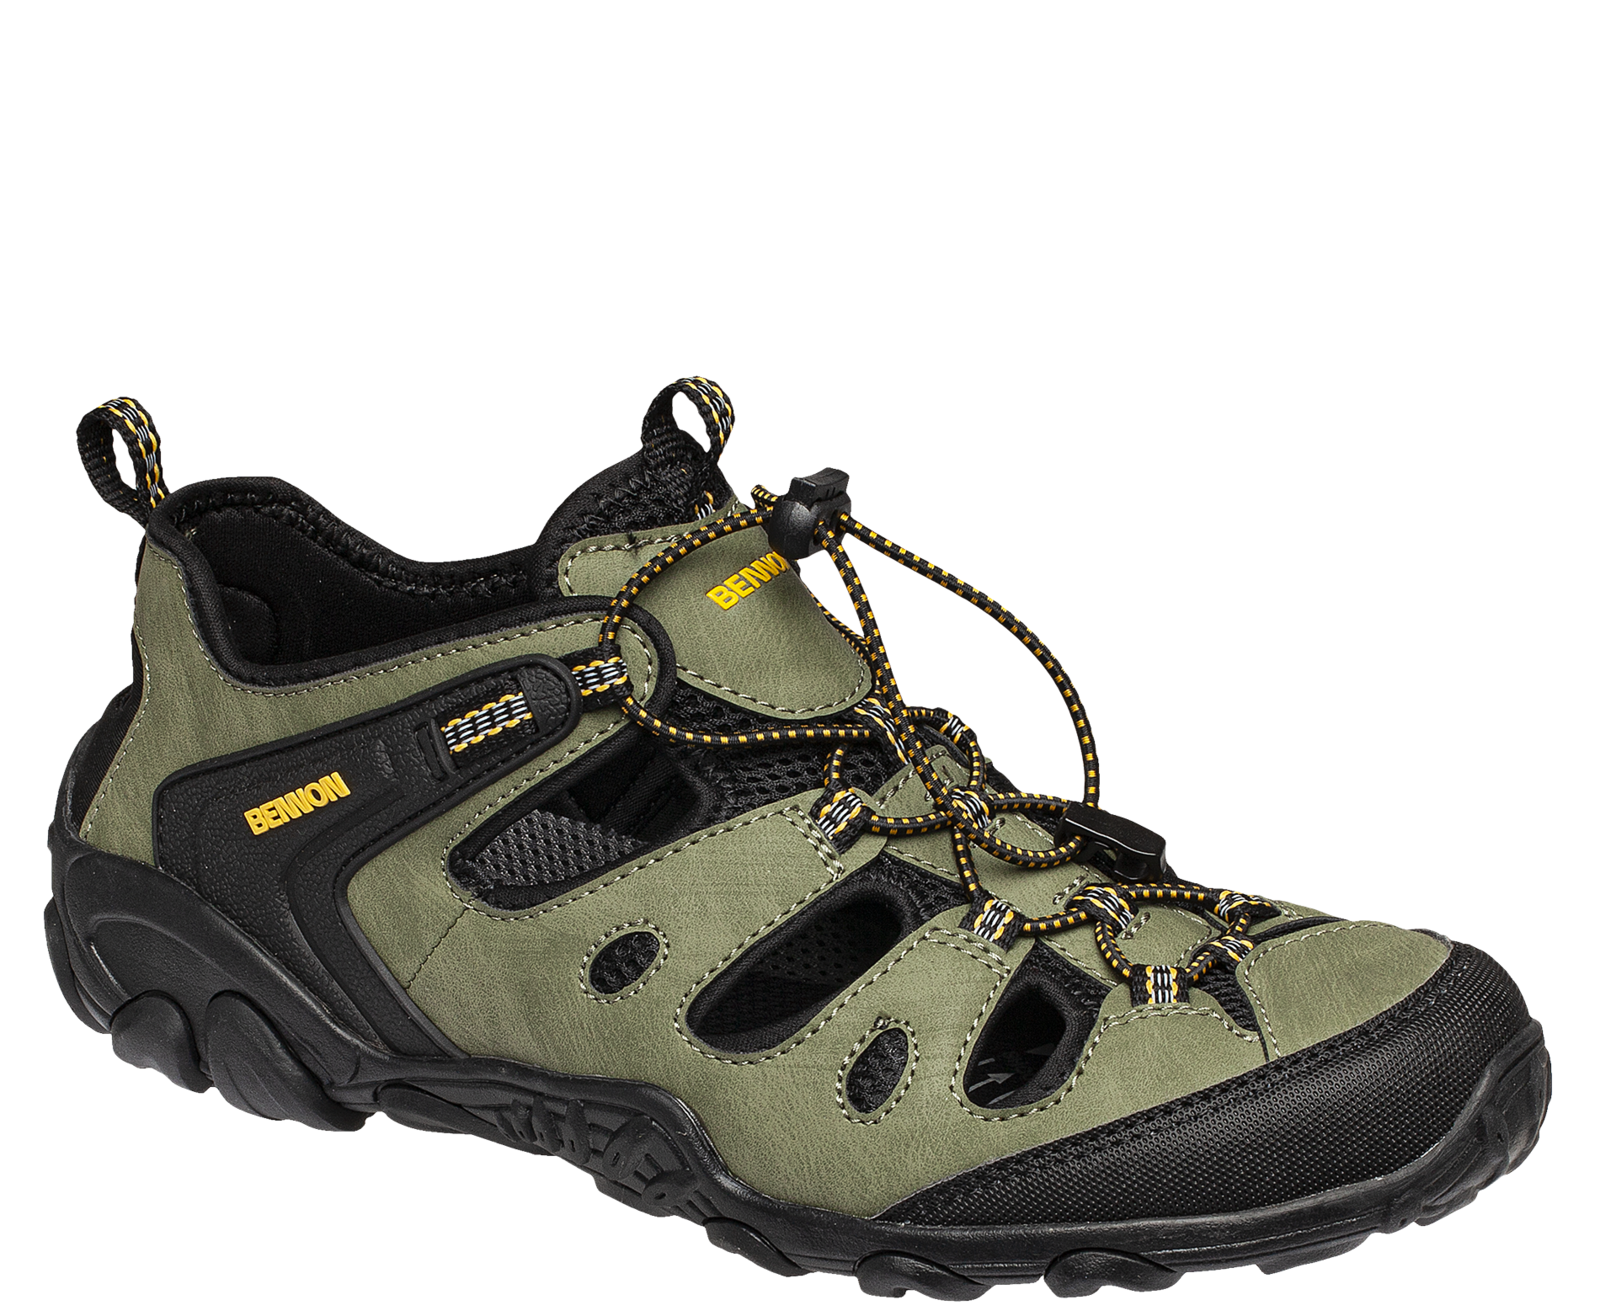 Outdoorové sandále Bennon Clifton - veľkosť: 41, farba: zelená